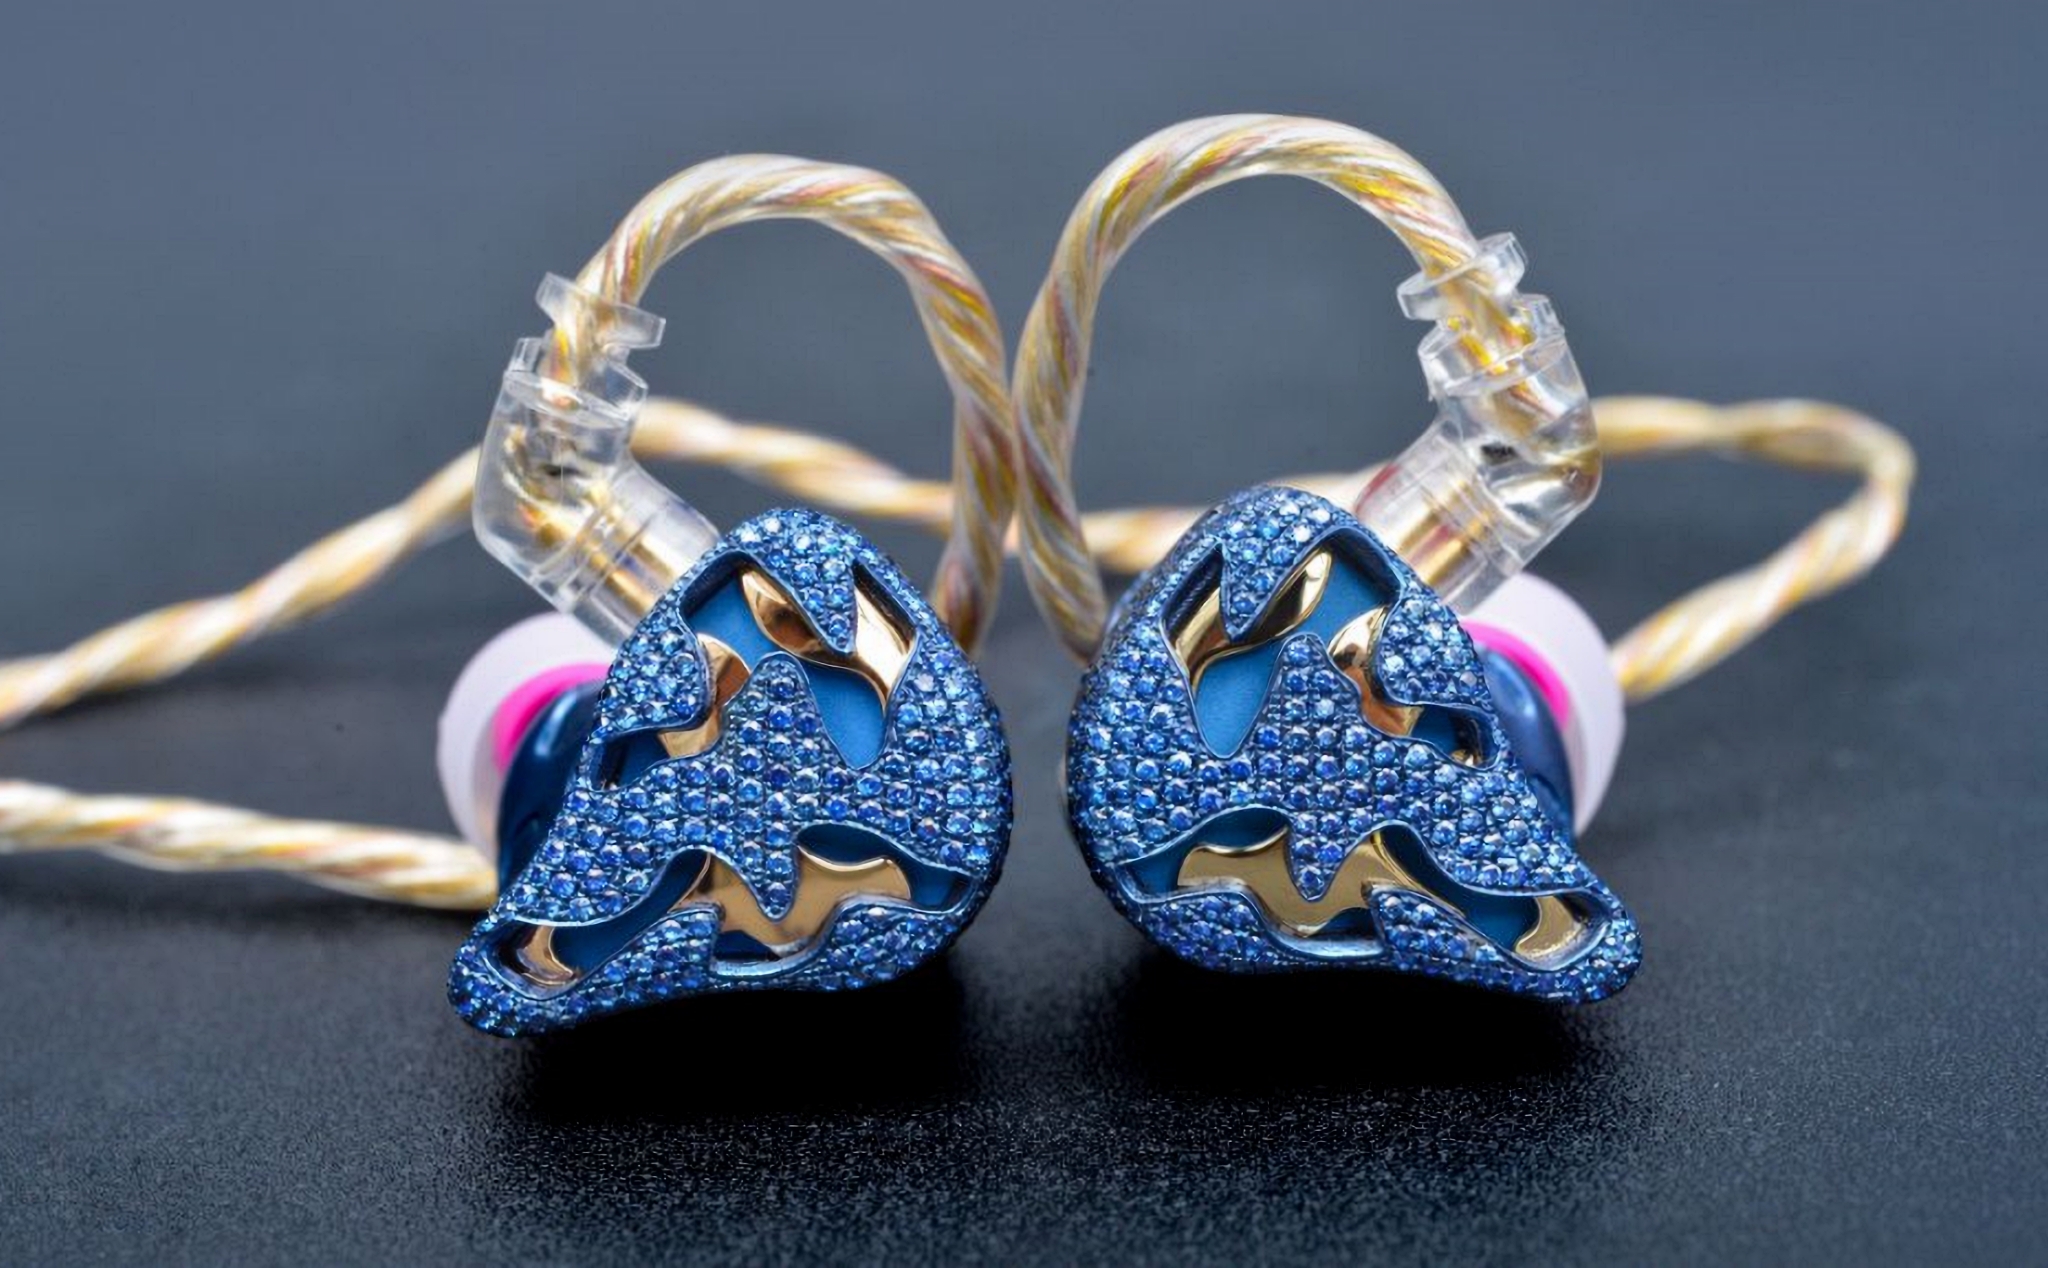 qdc Blue Dragon, chiếc tai nghe in-ear mắc nhất thế giới có giá hơn 350tr VNĐ